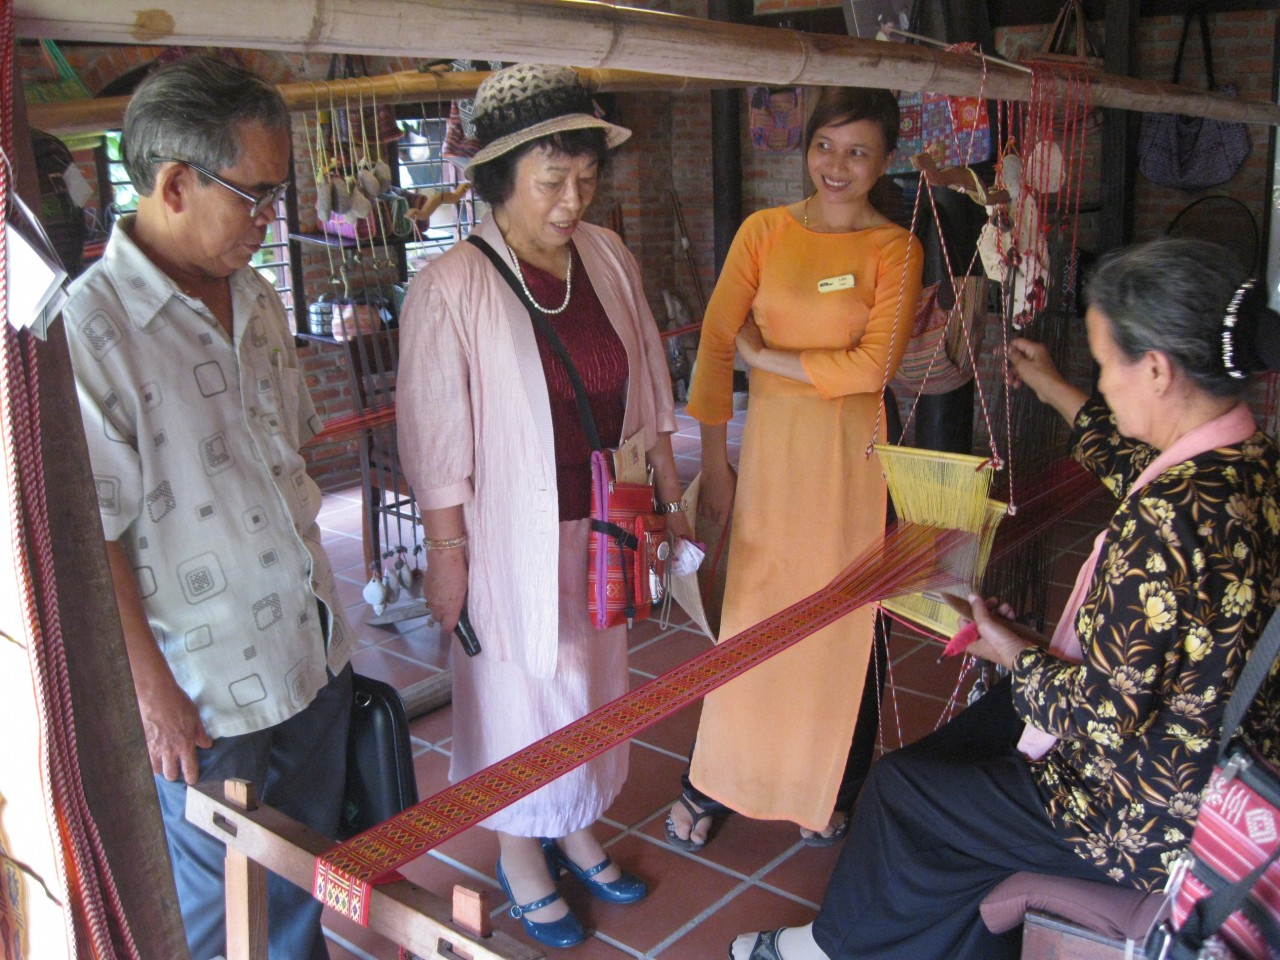 Hội đồng Hòa bình hữu nghị Nhật - Việt tỉnh Saitama: Tăng cường hỗ trợ nạn nhân da cam ở Quảng Nam